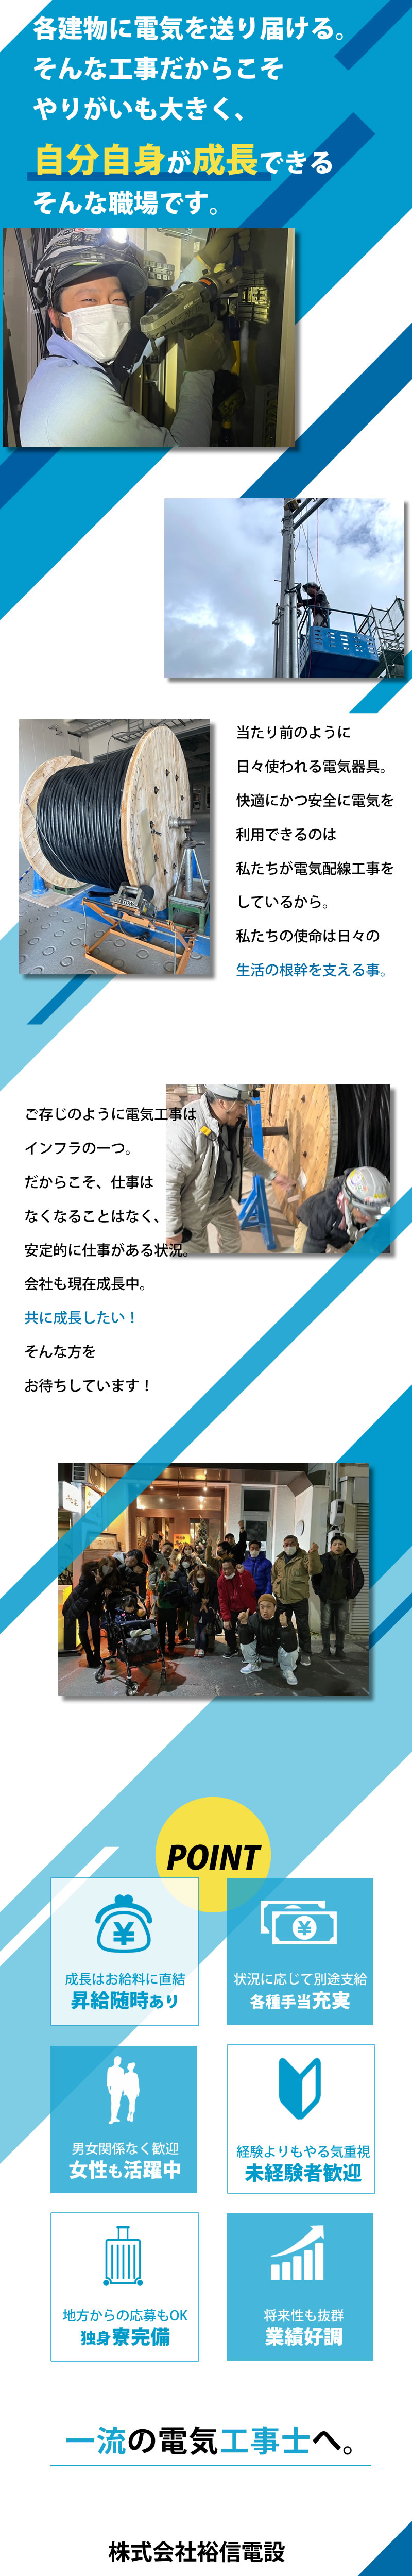 【電気工事士 求人募集】-大阪府羽曳野市- 一次側電源工事!使命感を持って取り組めるやりがいある仕事です